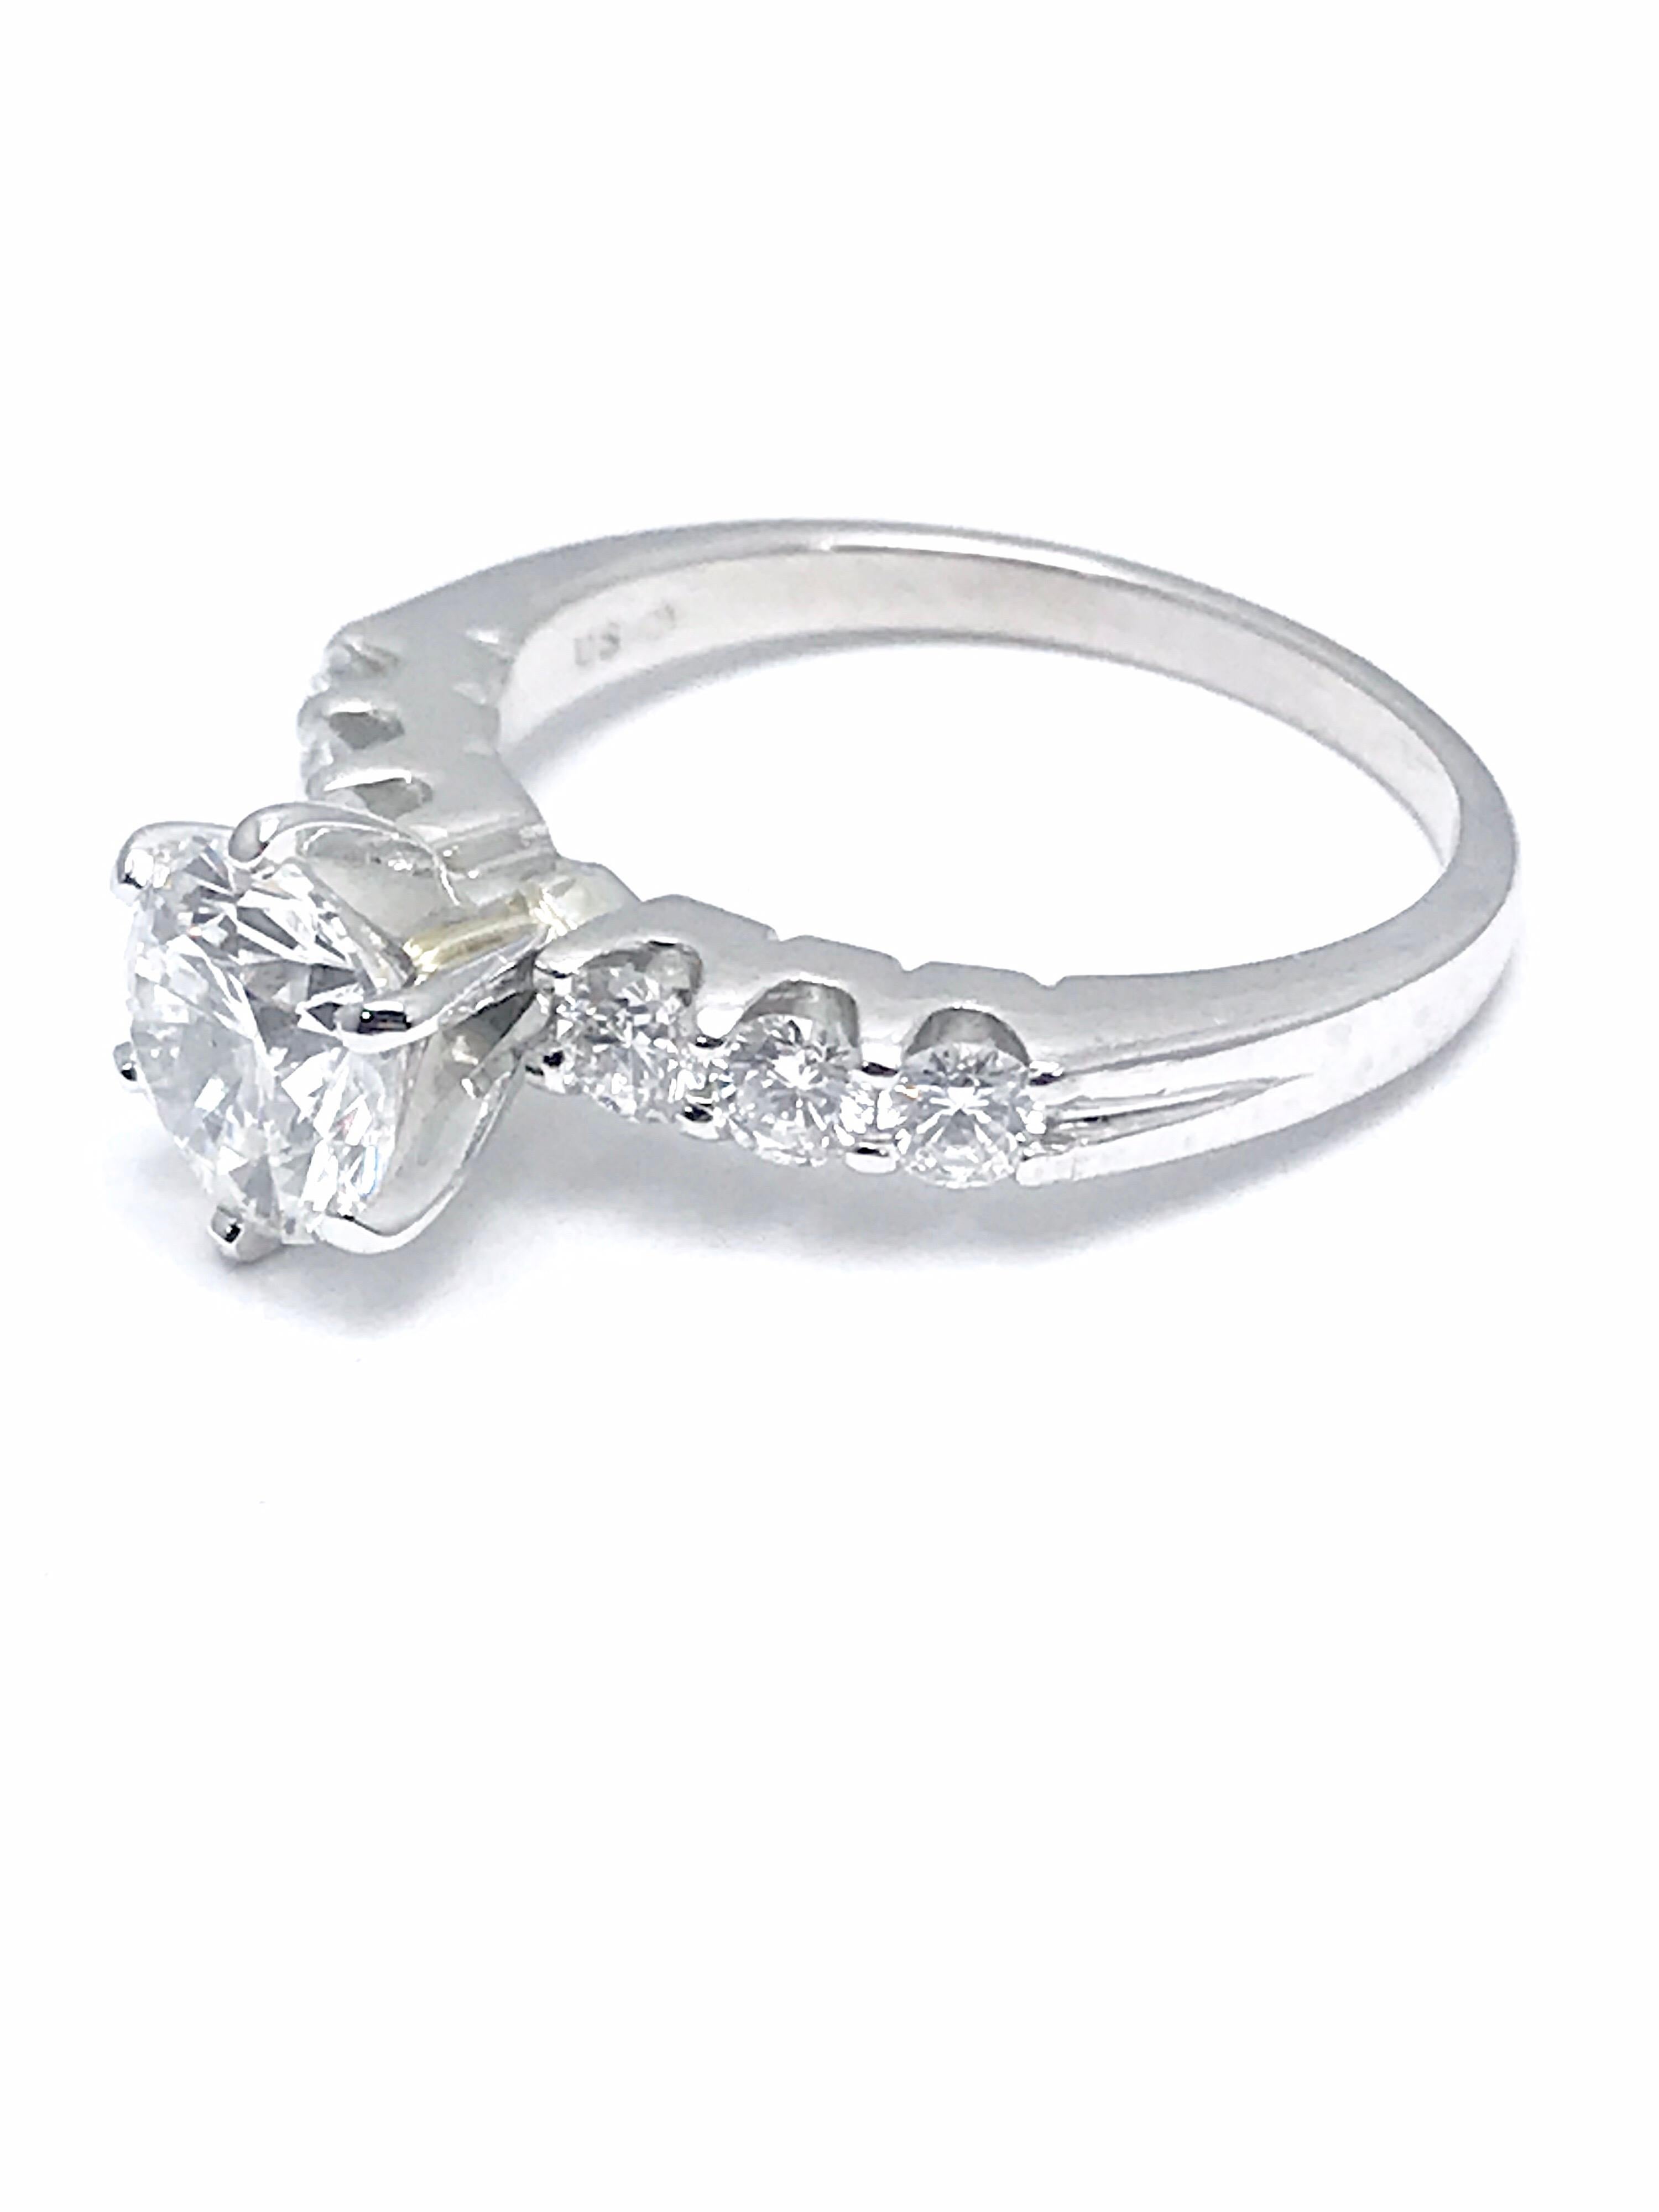 Round Cut 1.52 Carat F/IF Round Brilliant Diamond with 0.60 Carat Platinum Engagement Ring